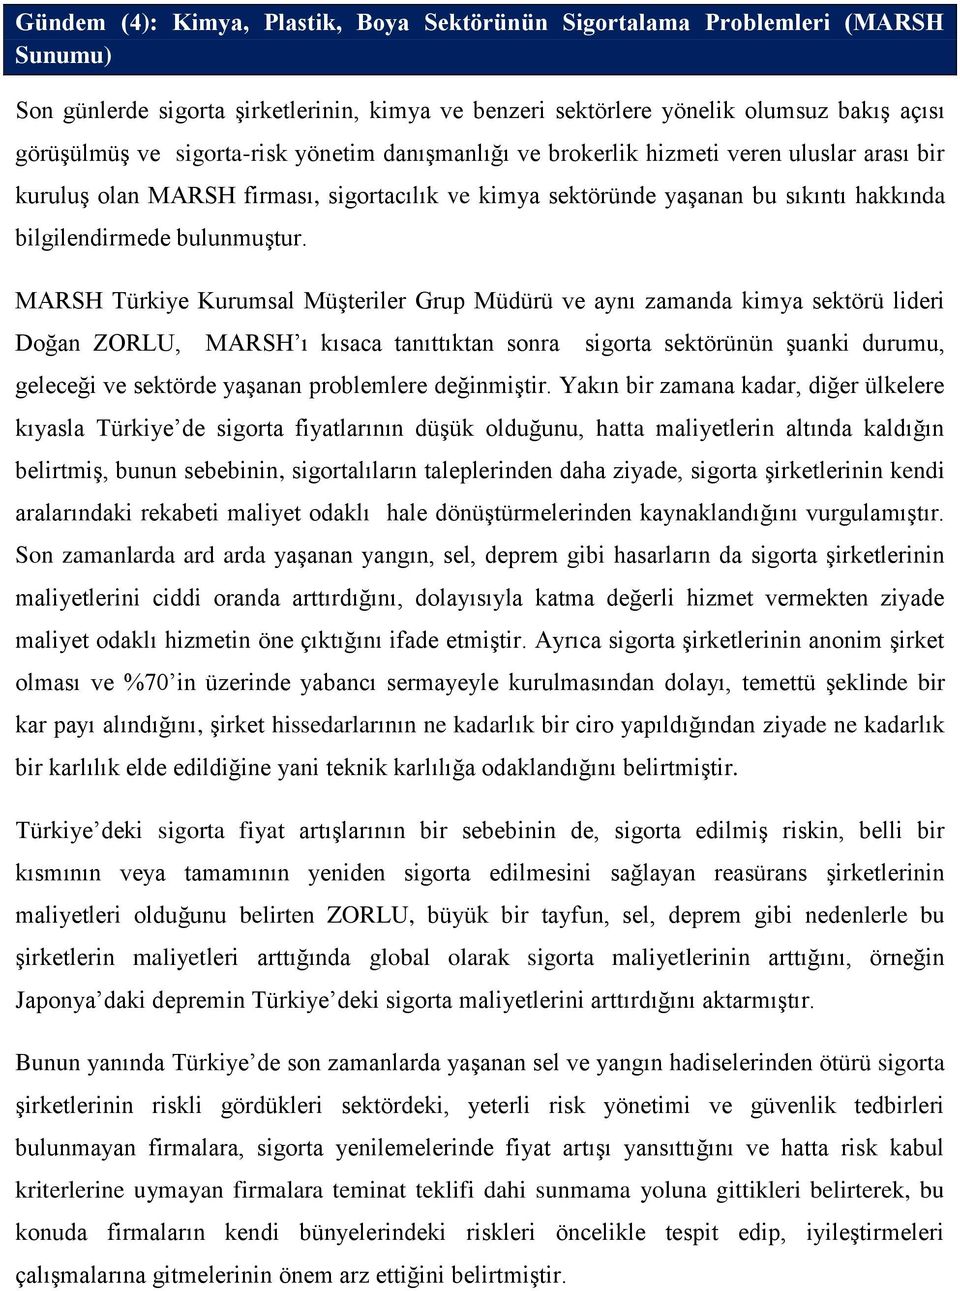 MARSH Türkiye Kurumsal Müşteriler Grup Müdürü ve aynı zamanda kimya sektörü lideri Doğan ZORLU, MARSH ı kısaca tanıttıktan sonra sigorta sektörünün şuanki durumu, geleceği ve sektörde yaşanan